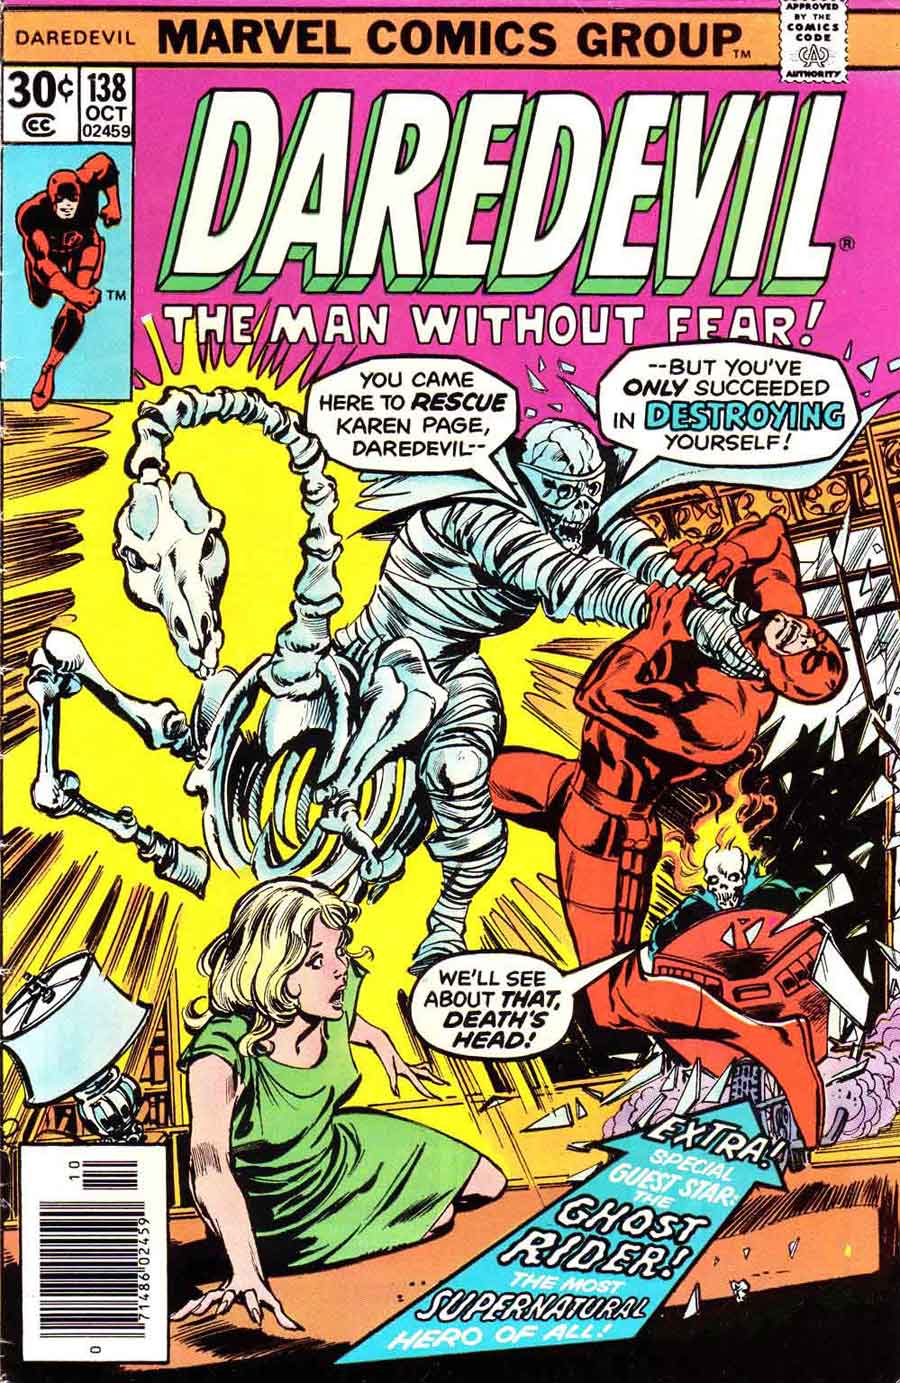 Daredevil v1 #138 marvel comic book cover